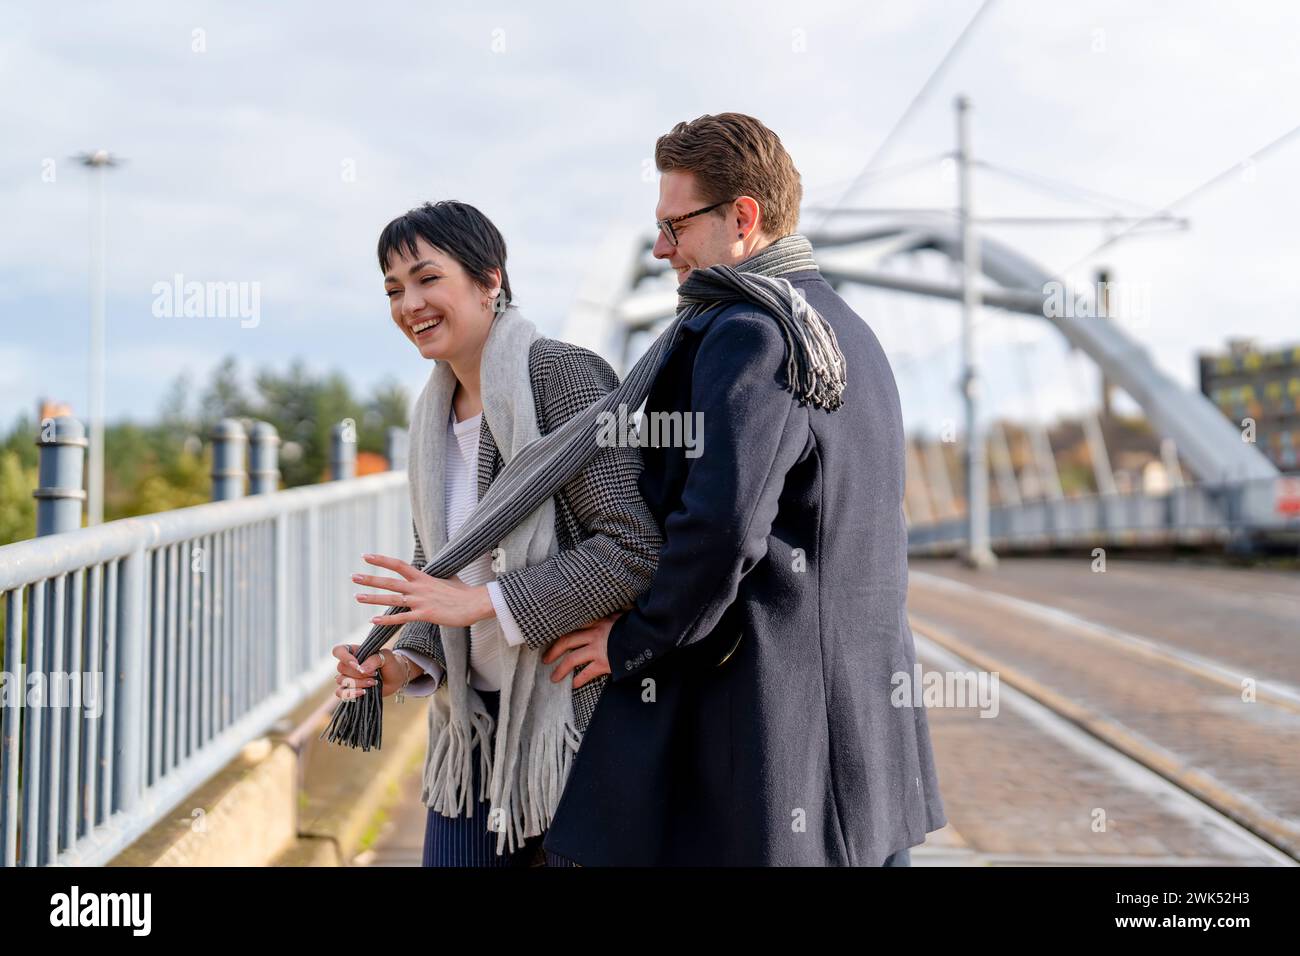 Gutaussehender Mann und schöne Frau umarmen sich gegenseitig, während sie durch die Stadt laufen, Spaß haben, Lifestyle-Foto Stockfoto